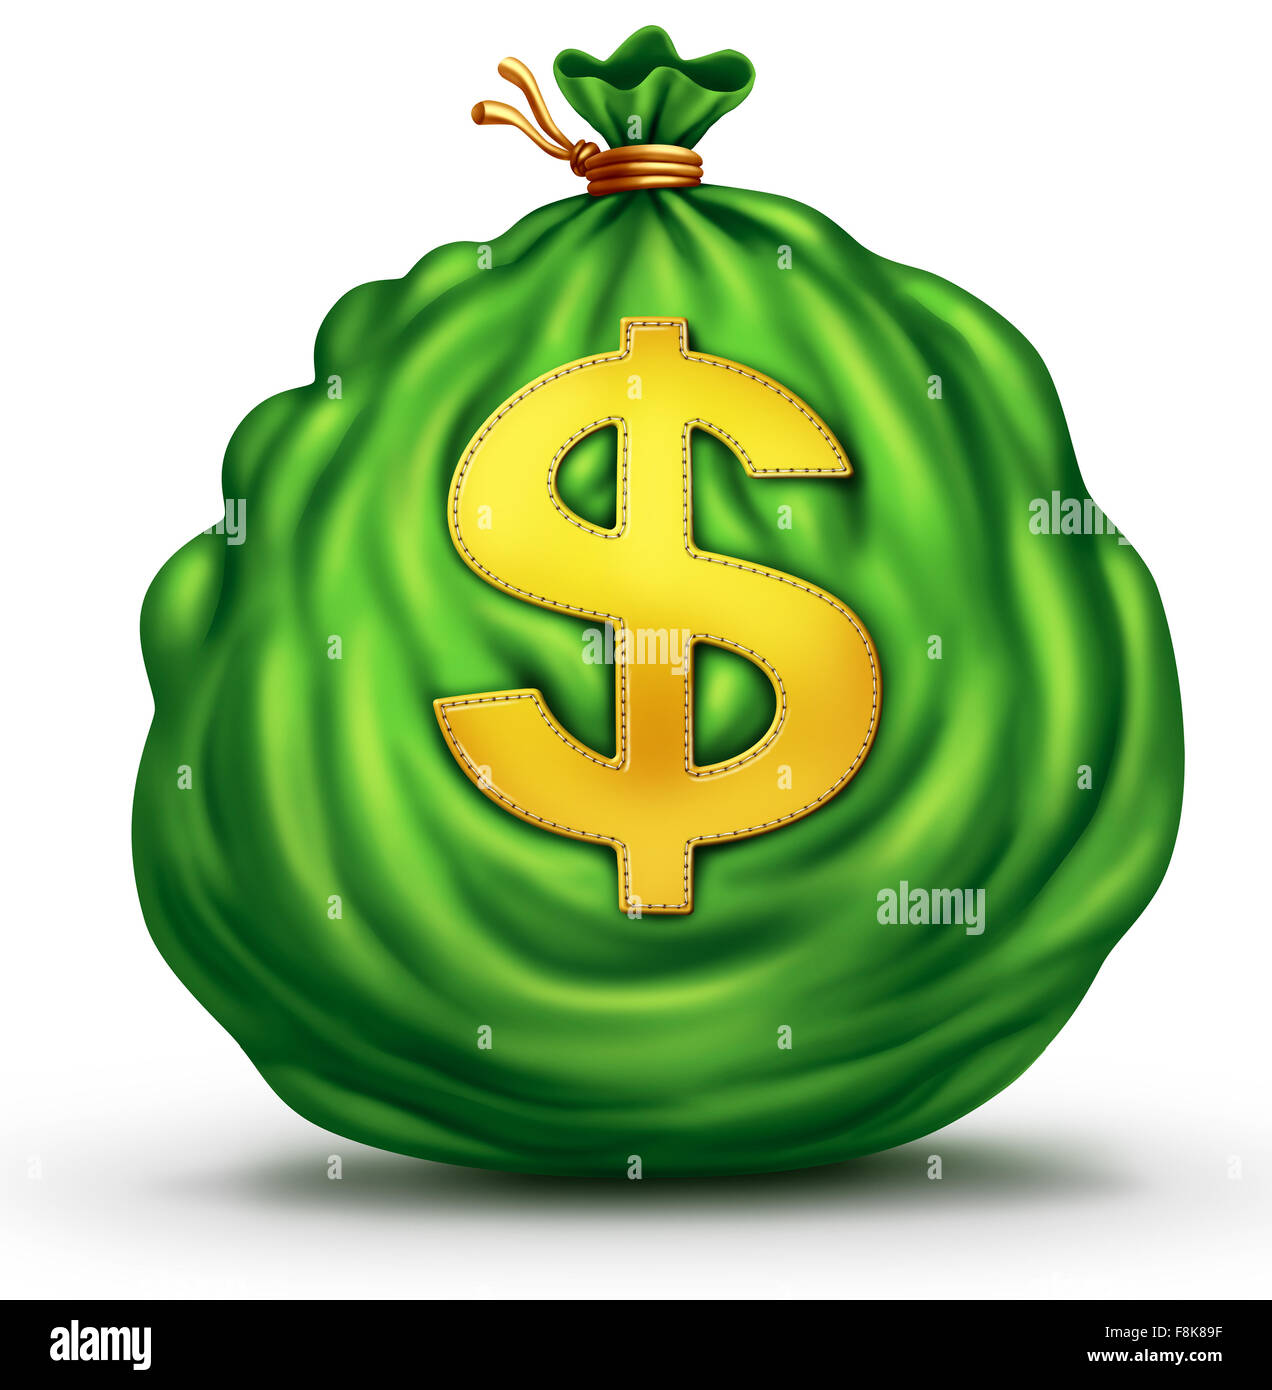 Geld Tasche Finanzgeschäfte Objekt wie eine große grüne Plünderung Währung mit einem Dollarsymbol genäht, das Finanz-Symbol auf einem weißen Hintergrund als ein Erfolg, Preis Metapher zu gewinnen. Stockfoto